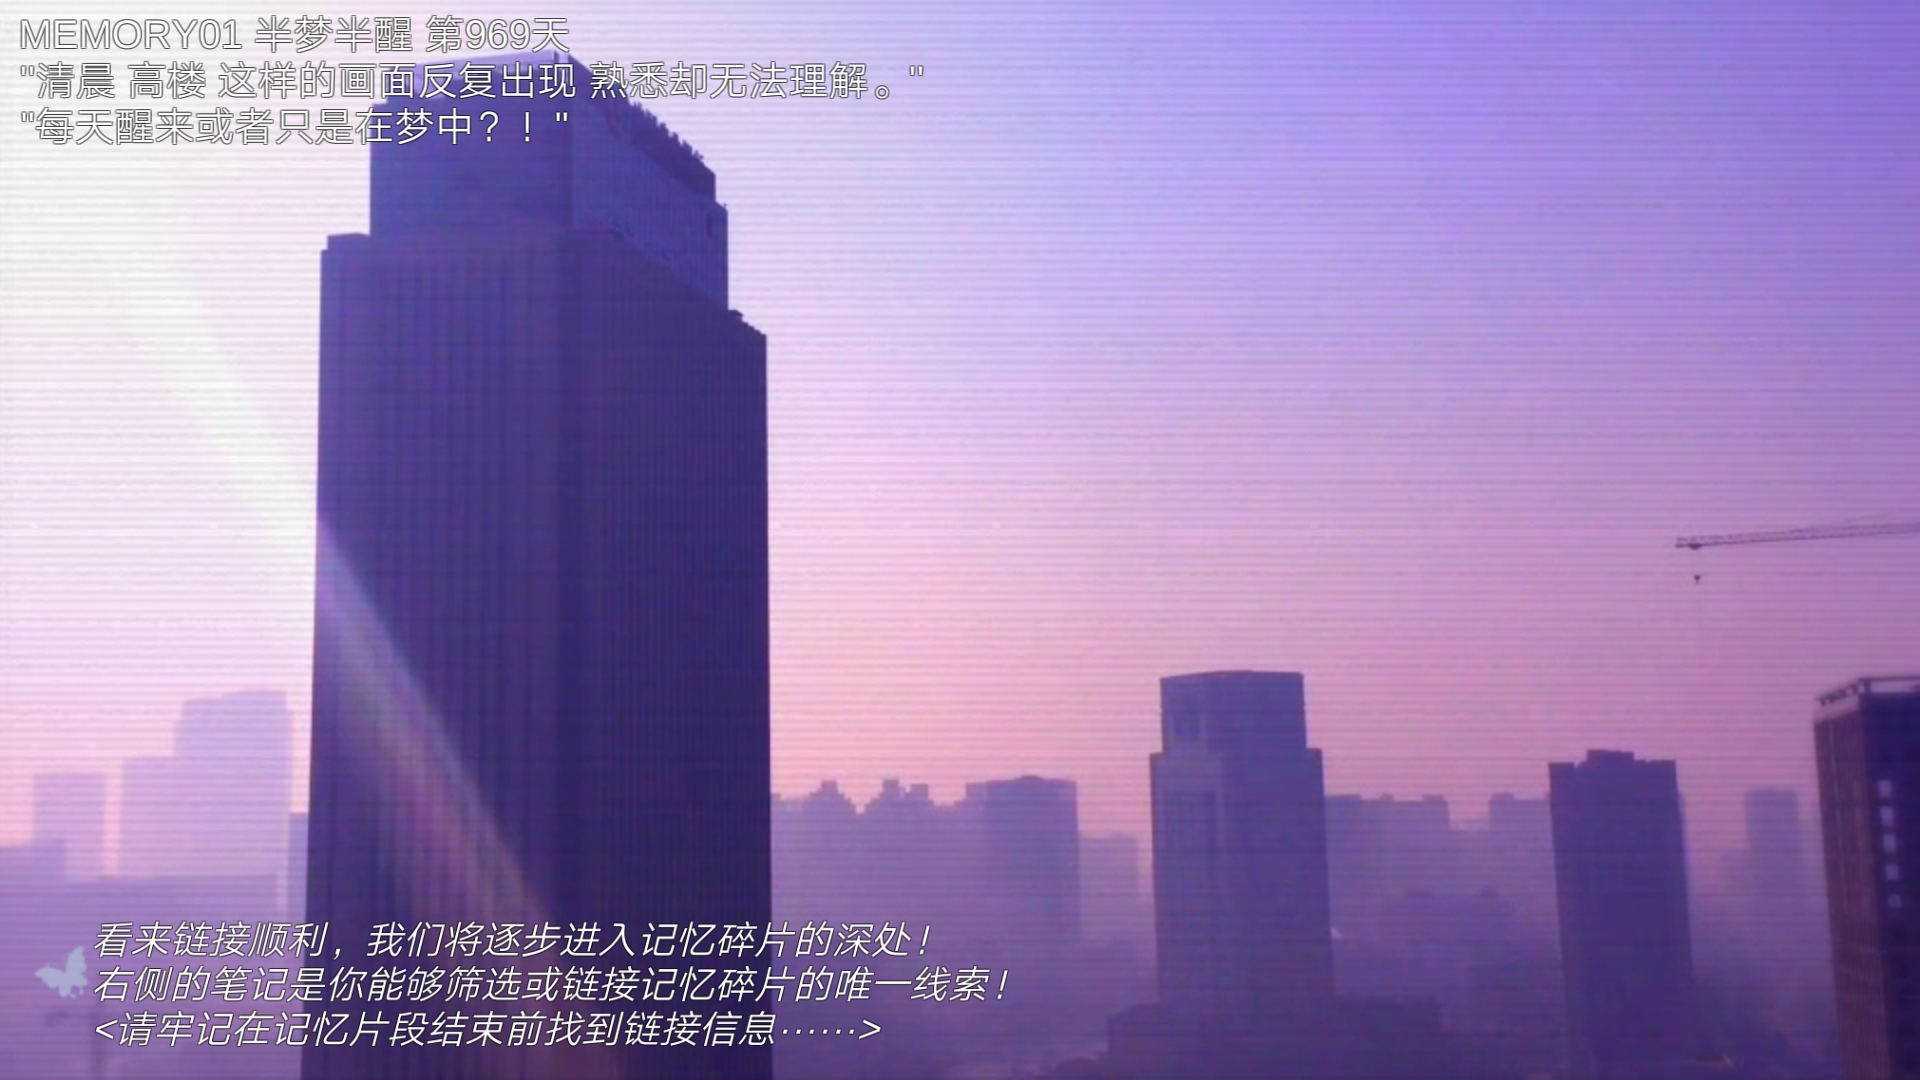 搜索·迷城掠影/The phantom of the city screenshot